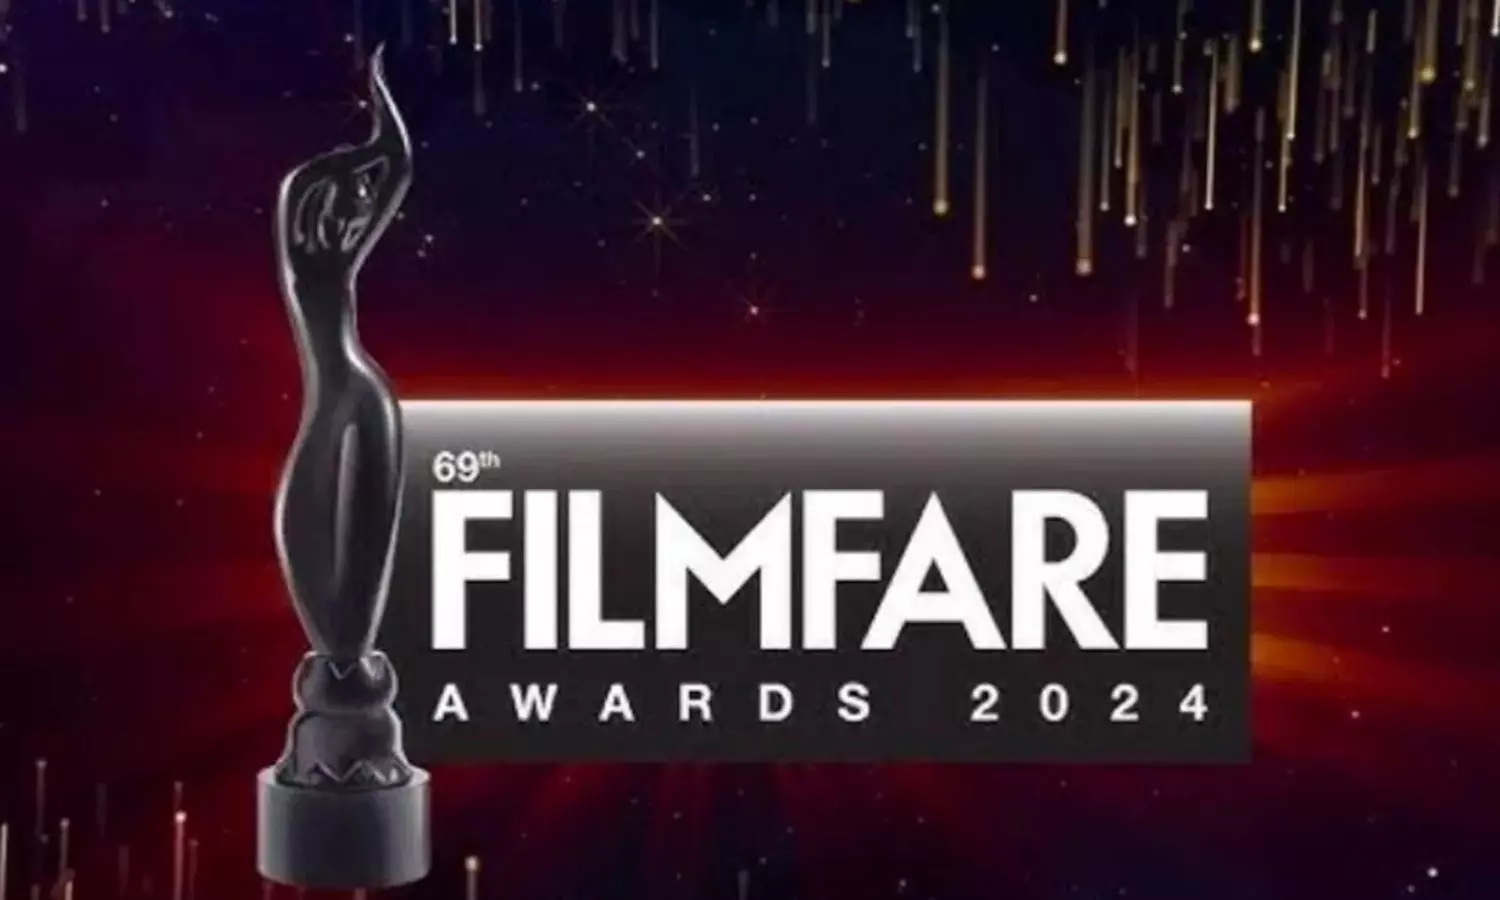 69th Filmfare Awards 2024 में इन ब्लॉकबस्टर फिल्मों ने बनाई जगह, यहां देखें लिस्ट